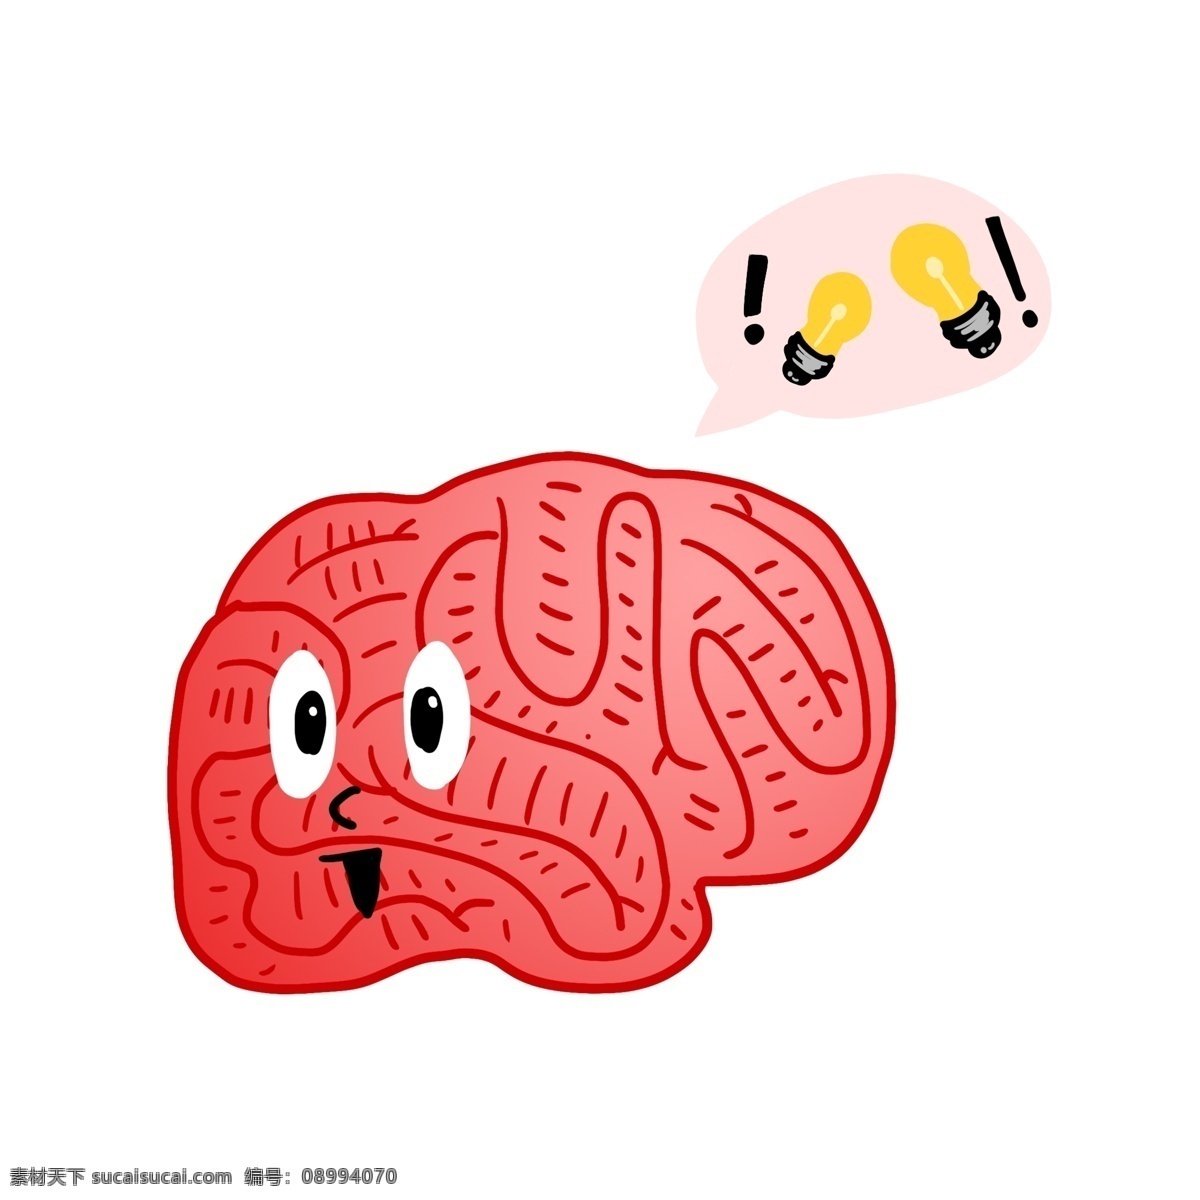 红色 人体 大脑 插图 红色的大脑 人体大脑器官 聪明的大脑 大脑装饰 卡通大脑 黄色灯泡 活动的大脑